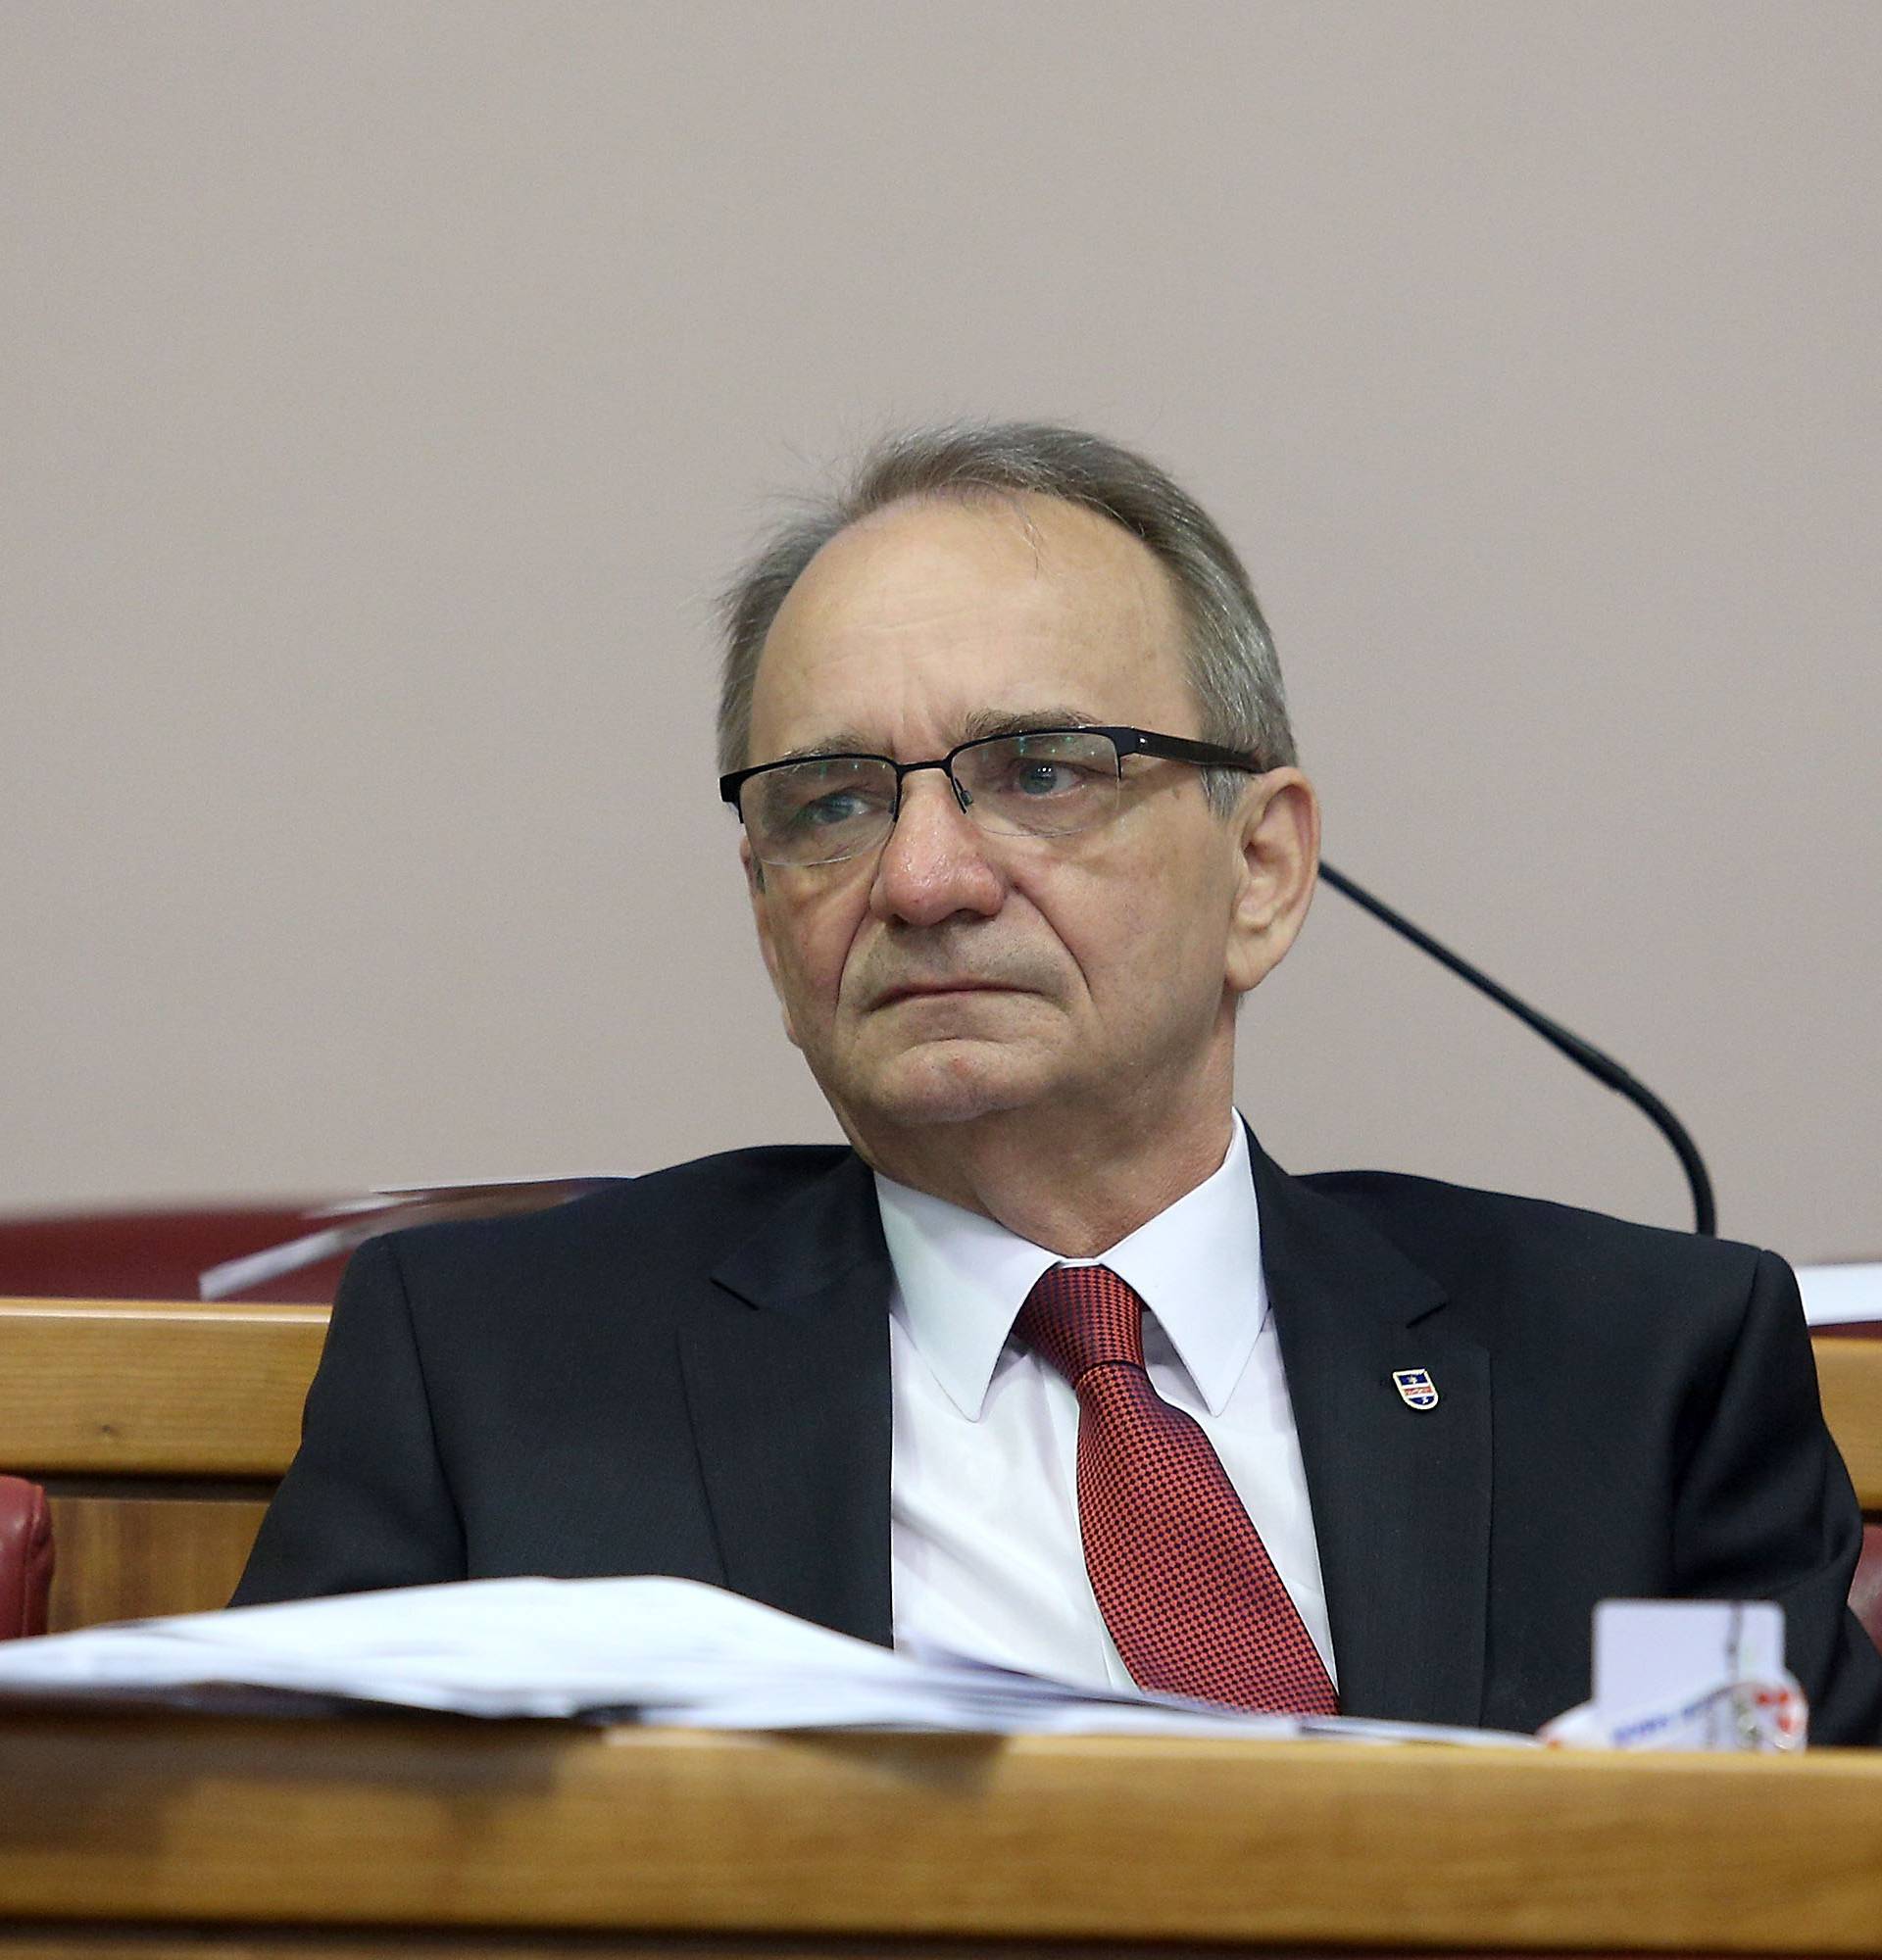 Nakon Vulinove ostavke, na čelu HDSSB-a Branimir Glavaš